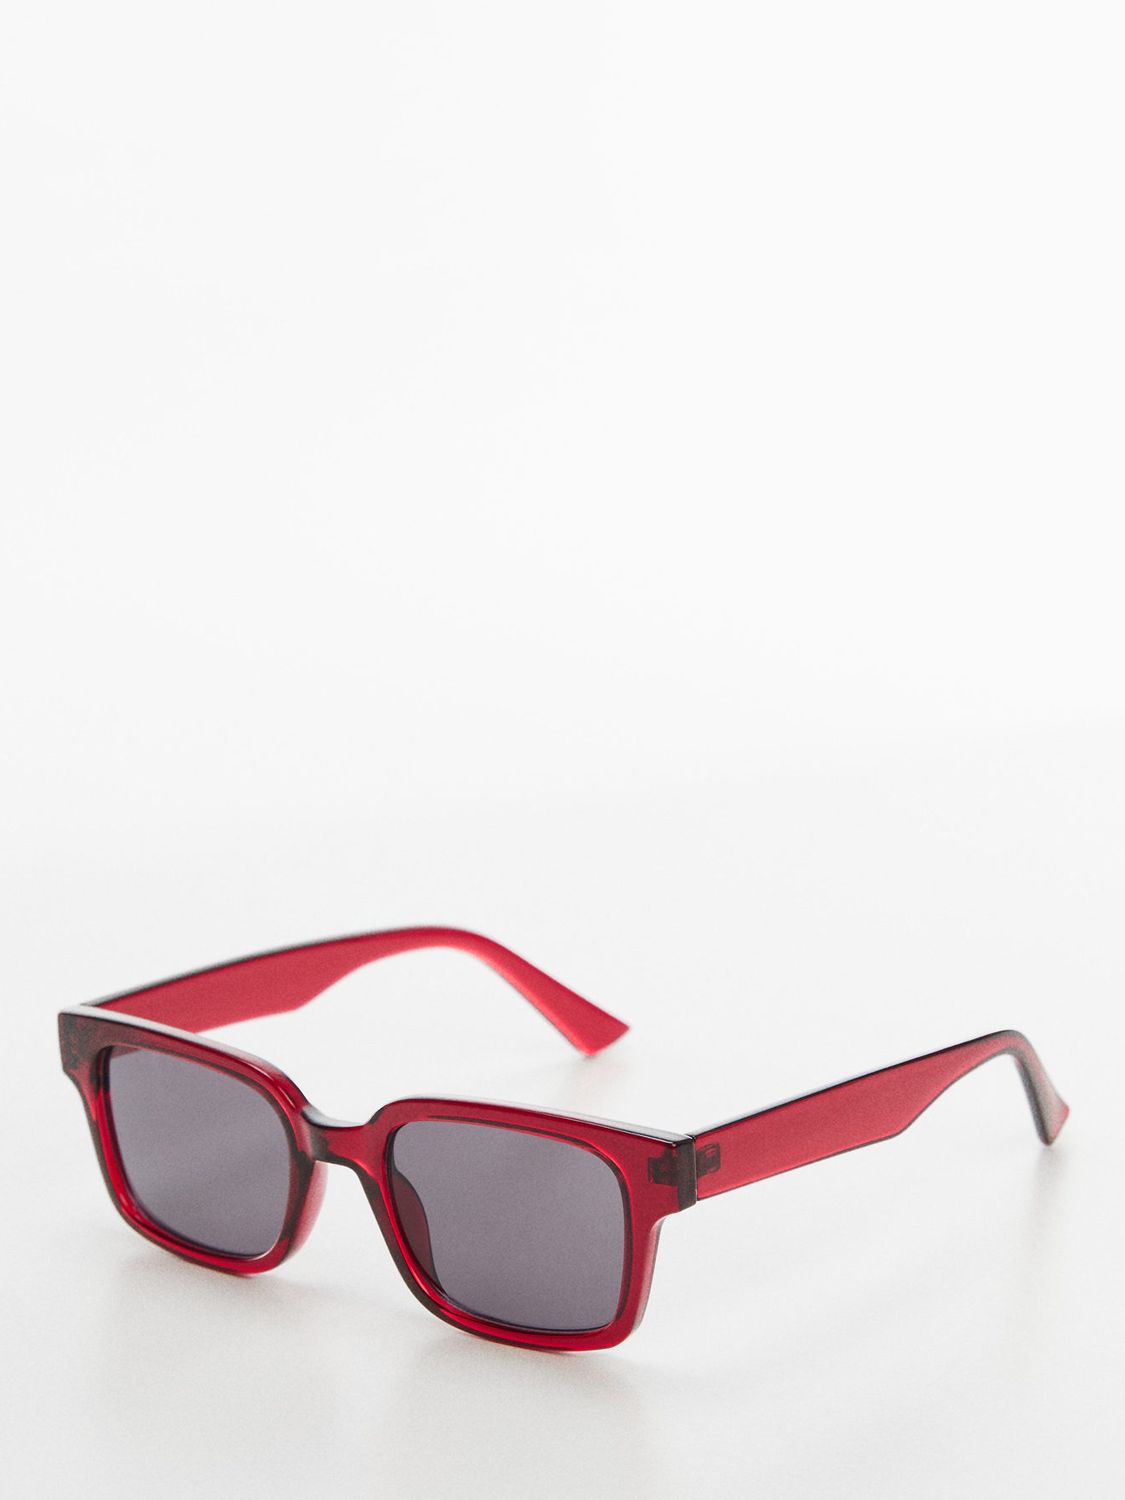 Women's Red Sunglasses